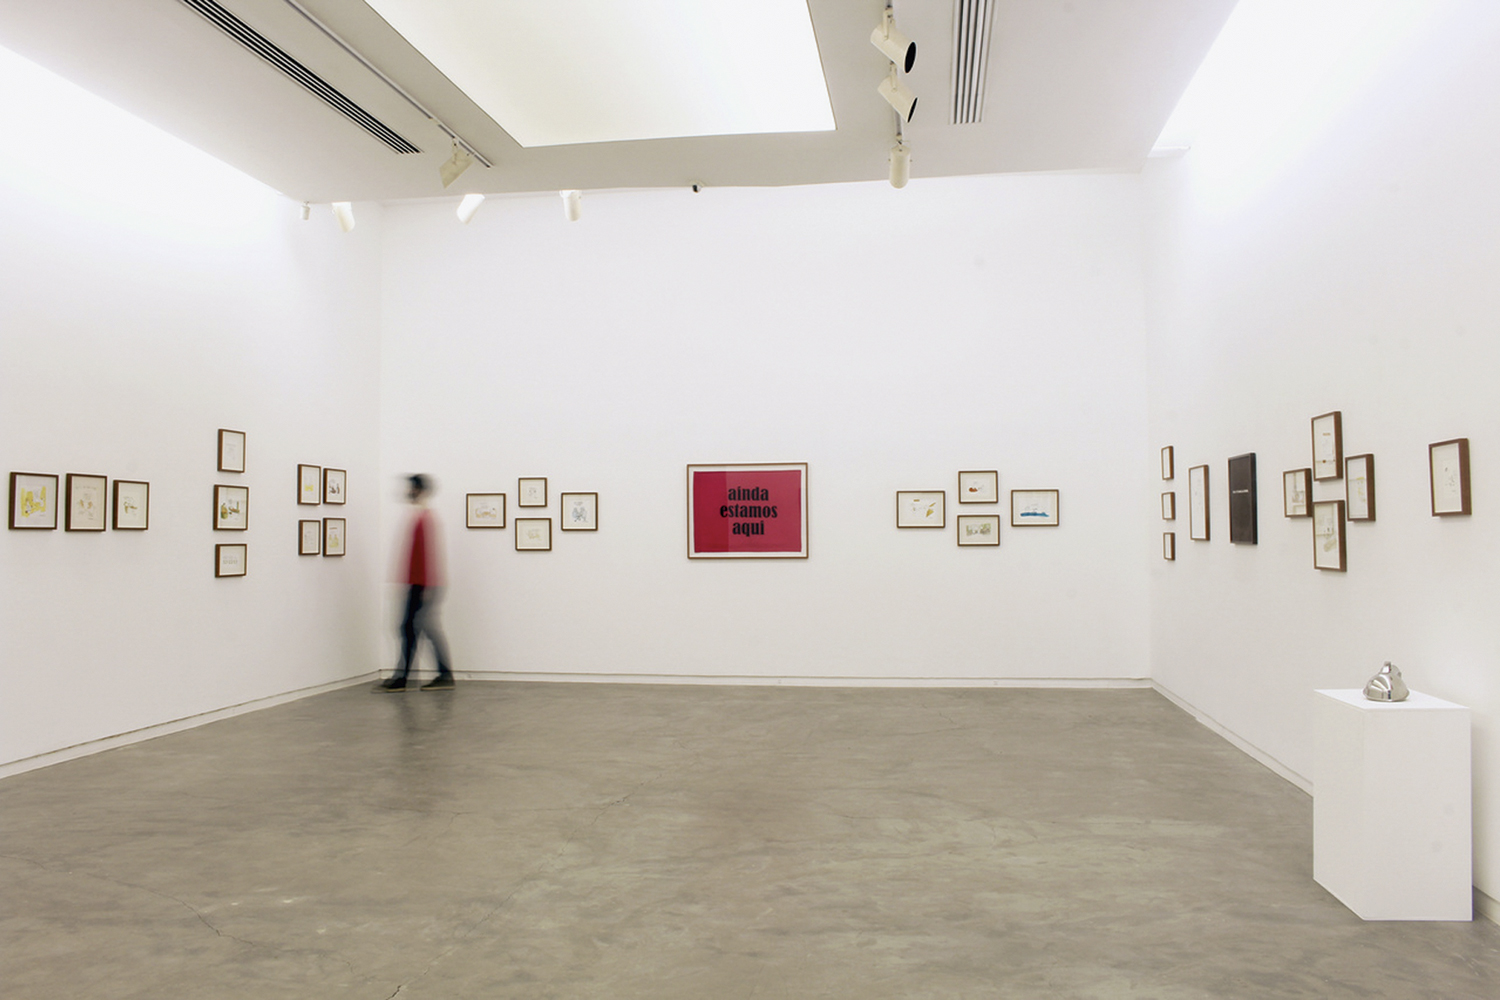 Dahmer na Galeria Silvia Cintra: mostra com tirinhas do cartunista e peças únicas em exposição -